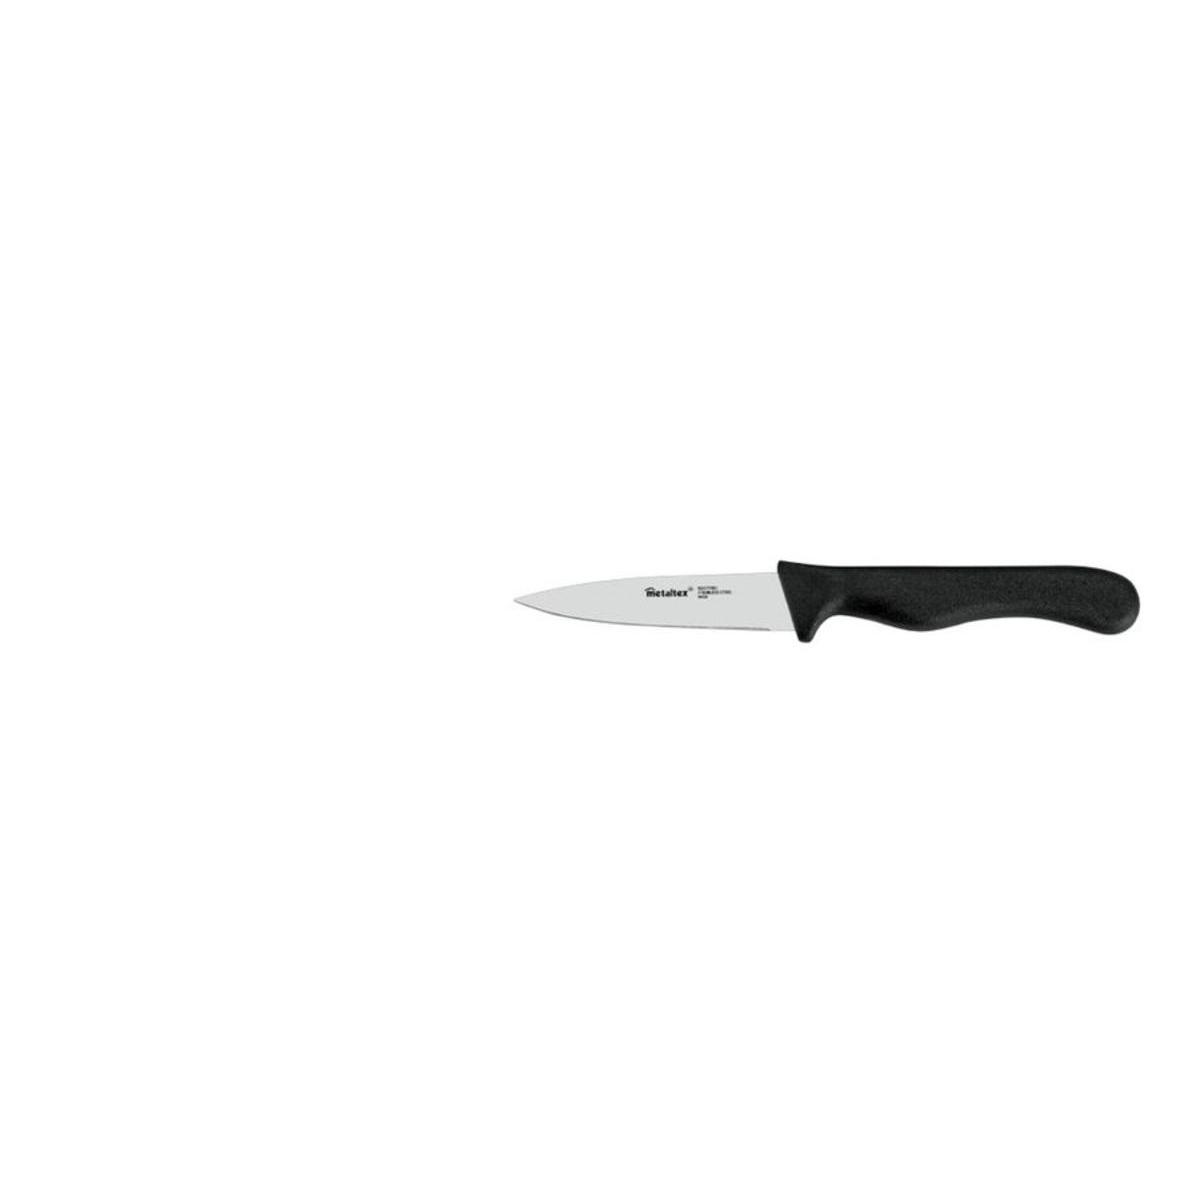 Couteau d'office - Acier inoxydable et plastique - 23,5 x 6,8 x 1,3 cm - Gris et noir